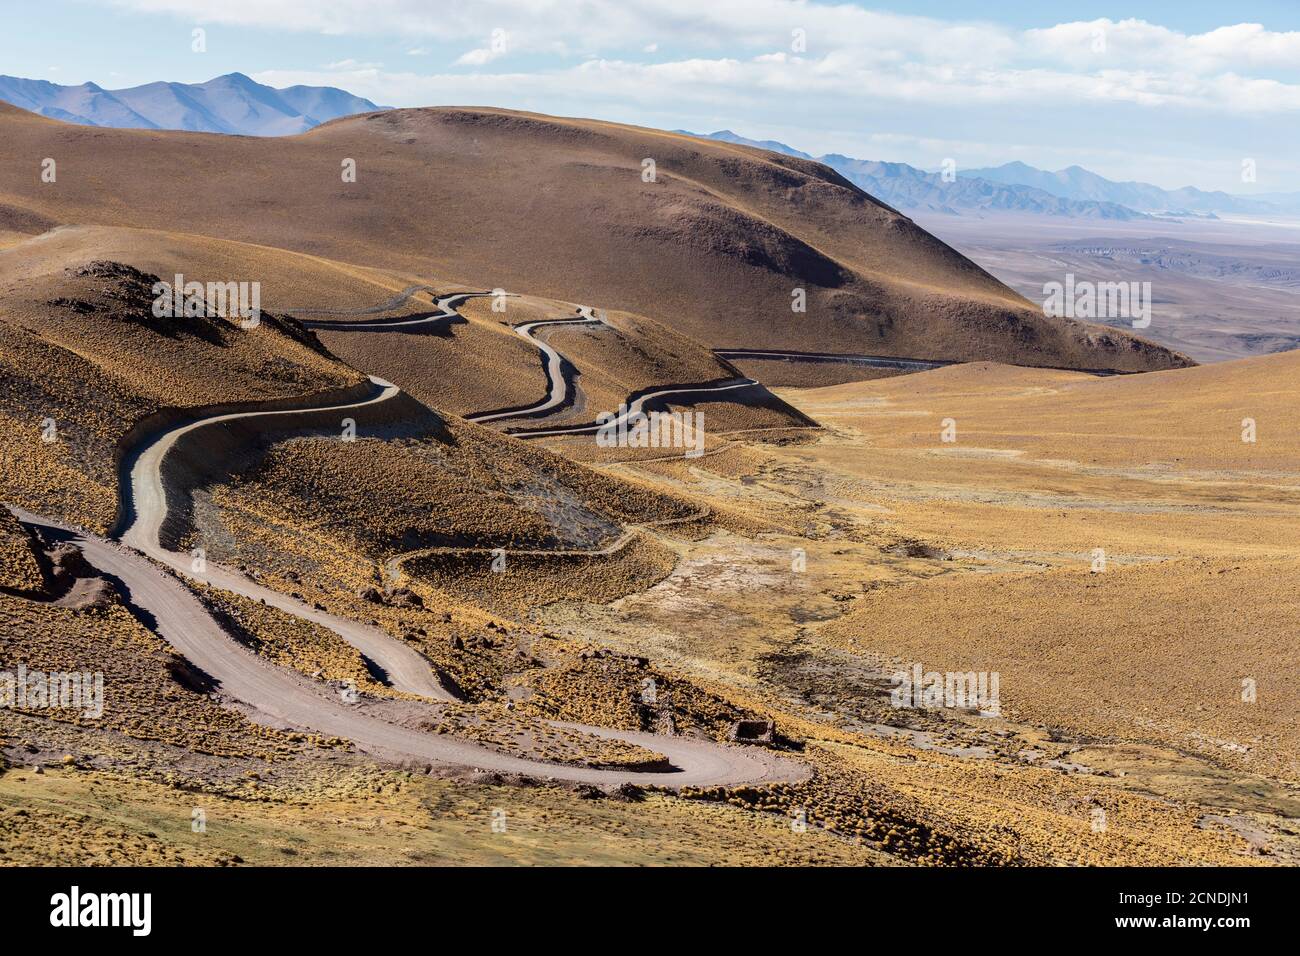 Ruta 40, carretera empinada que conduce al paso Piedra del Molino, Parque Nacional los Cardones, Provincia de Salta, Argentina Foto de stock